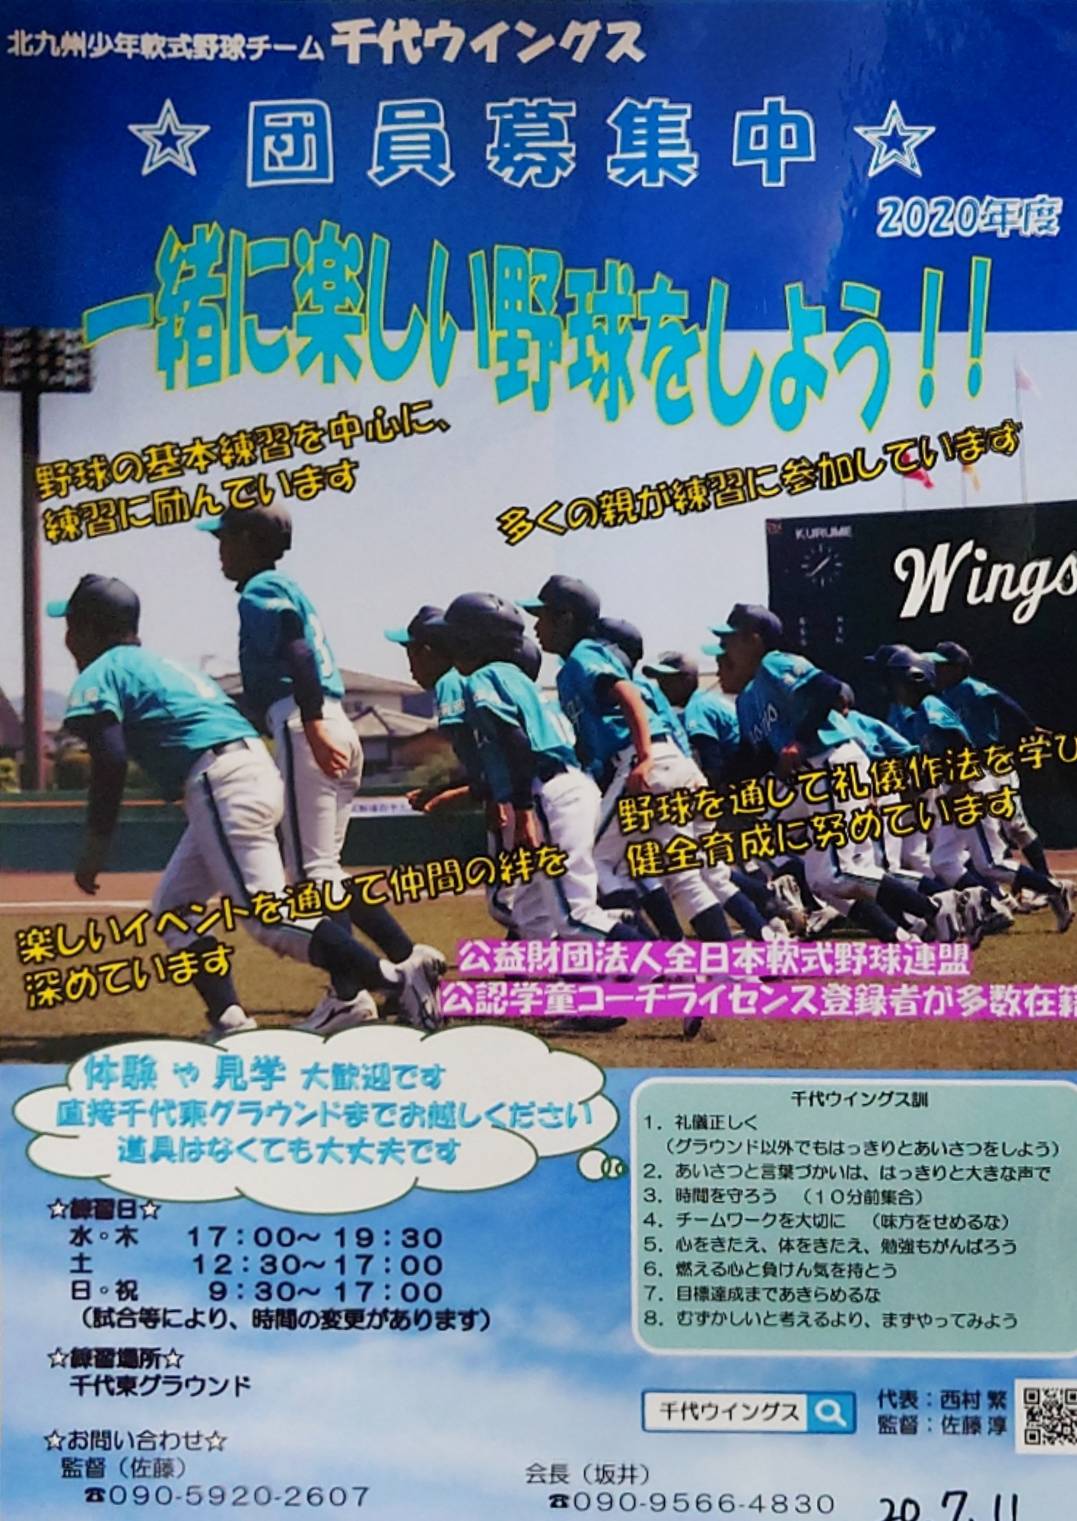 軟式 大会 2020 全日本 野球 学童